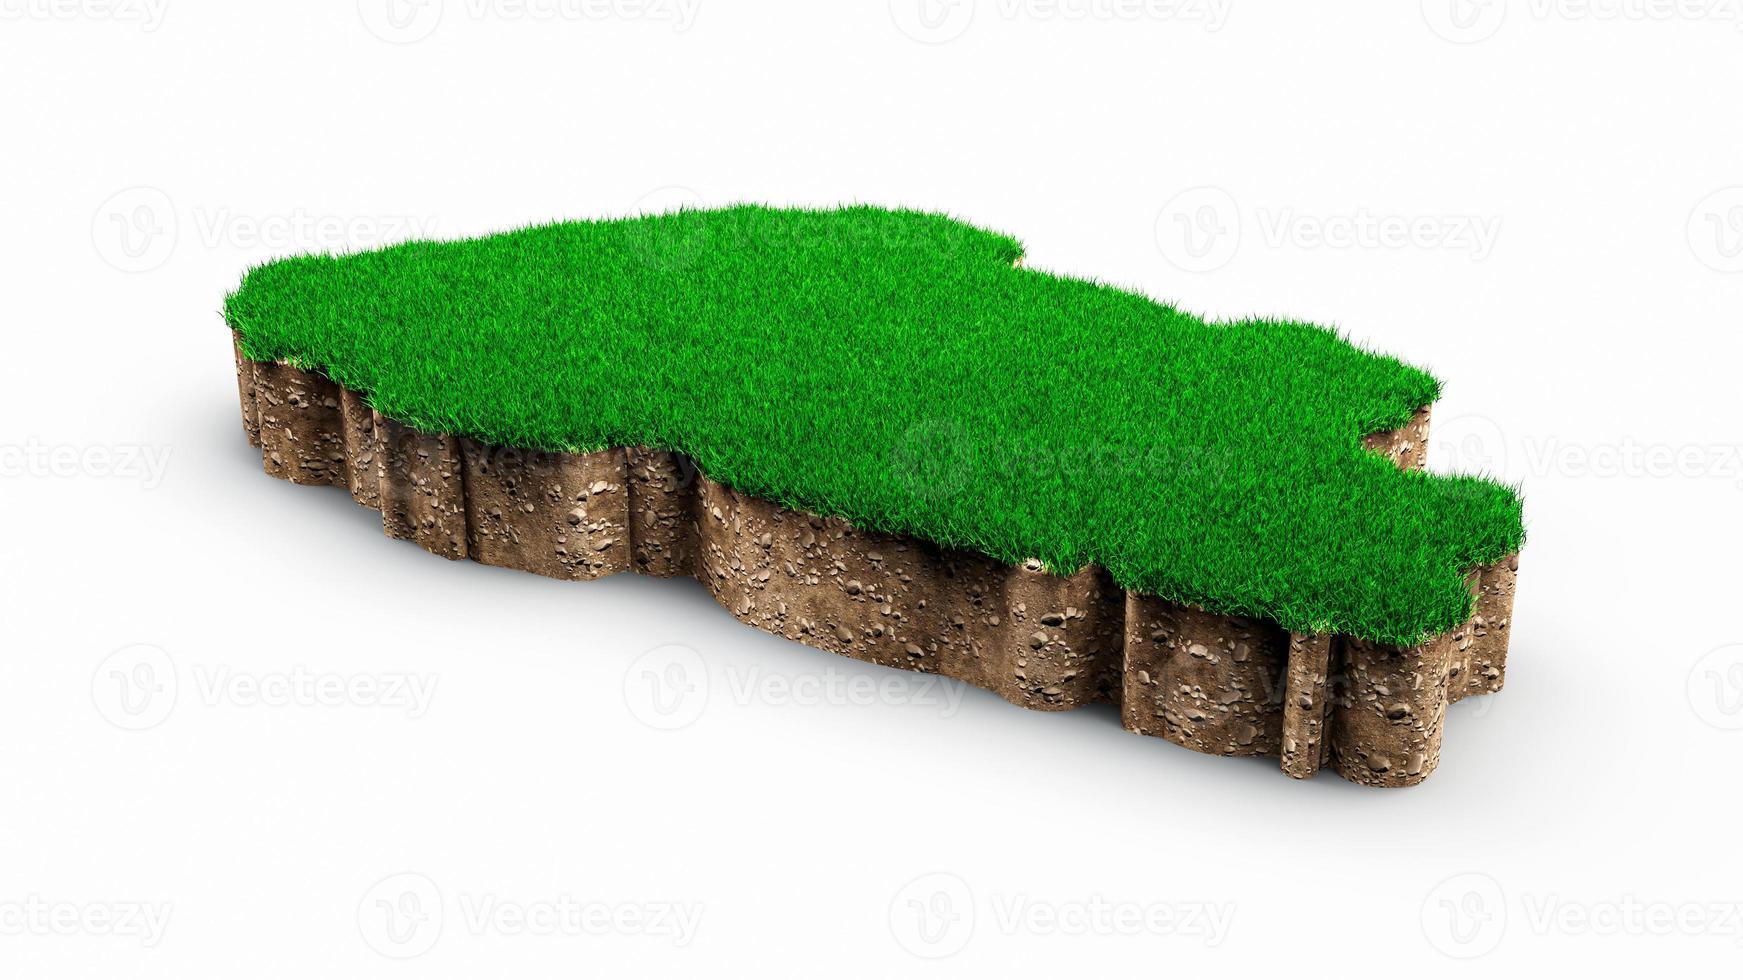 bhután mapa suelo tierra geología sección transversal con hierba verde y roca suelo textura 3d ilustración foto